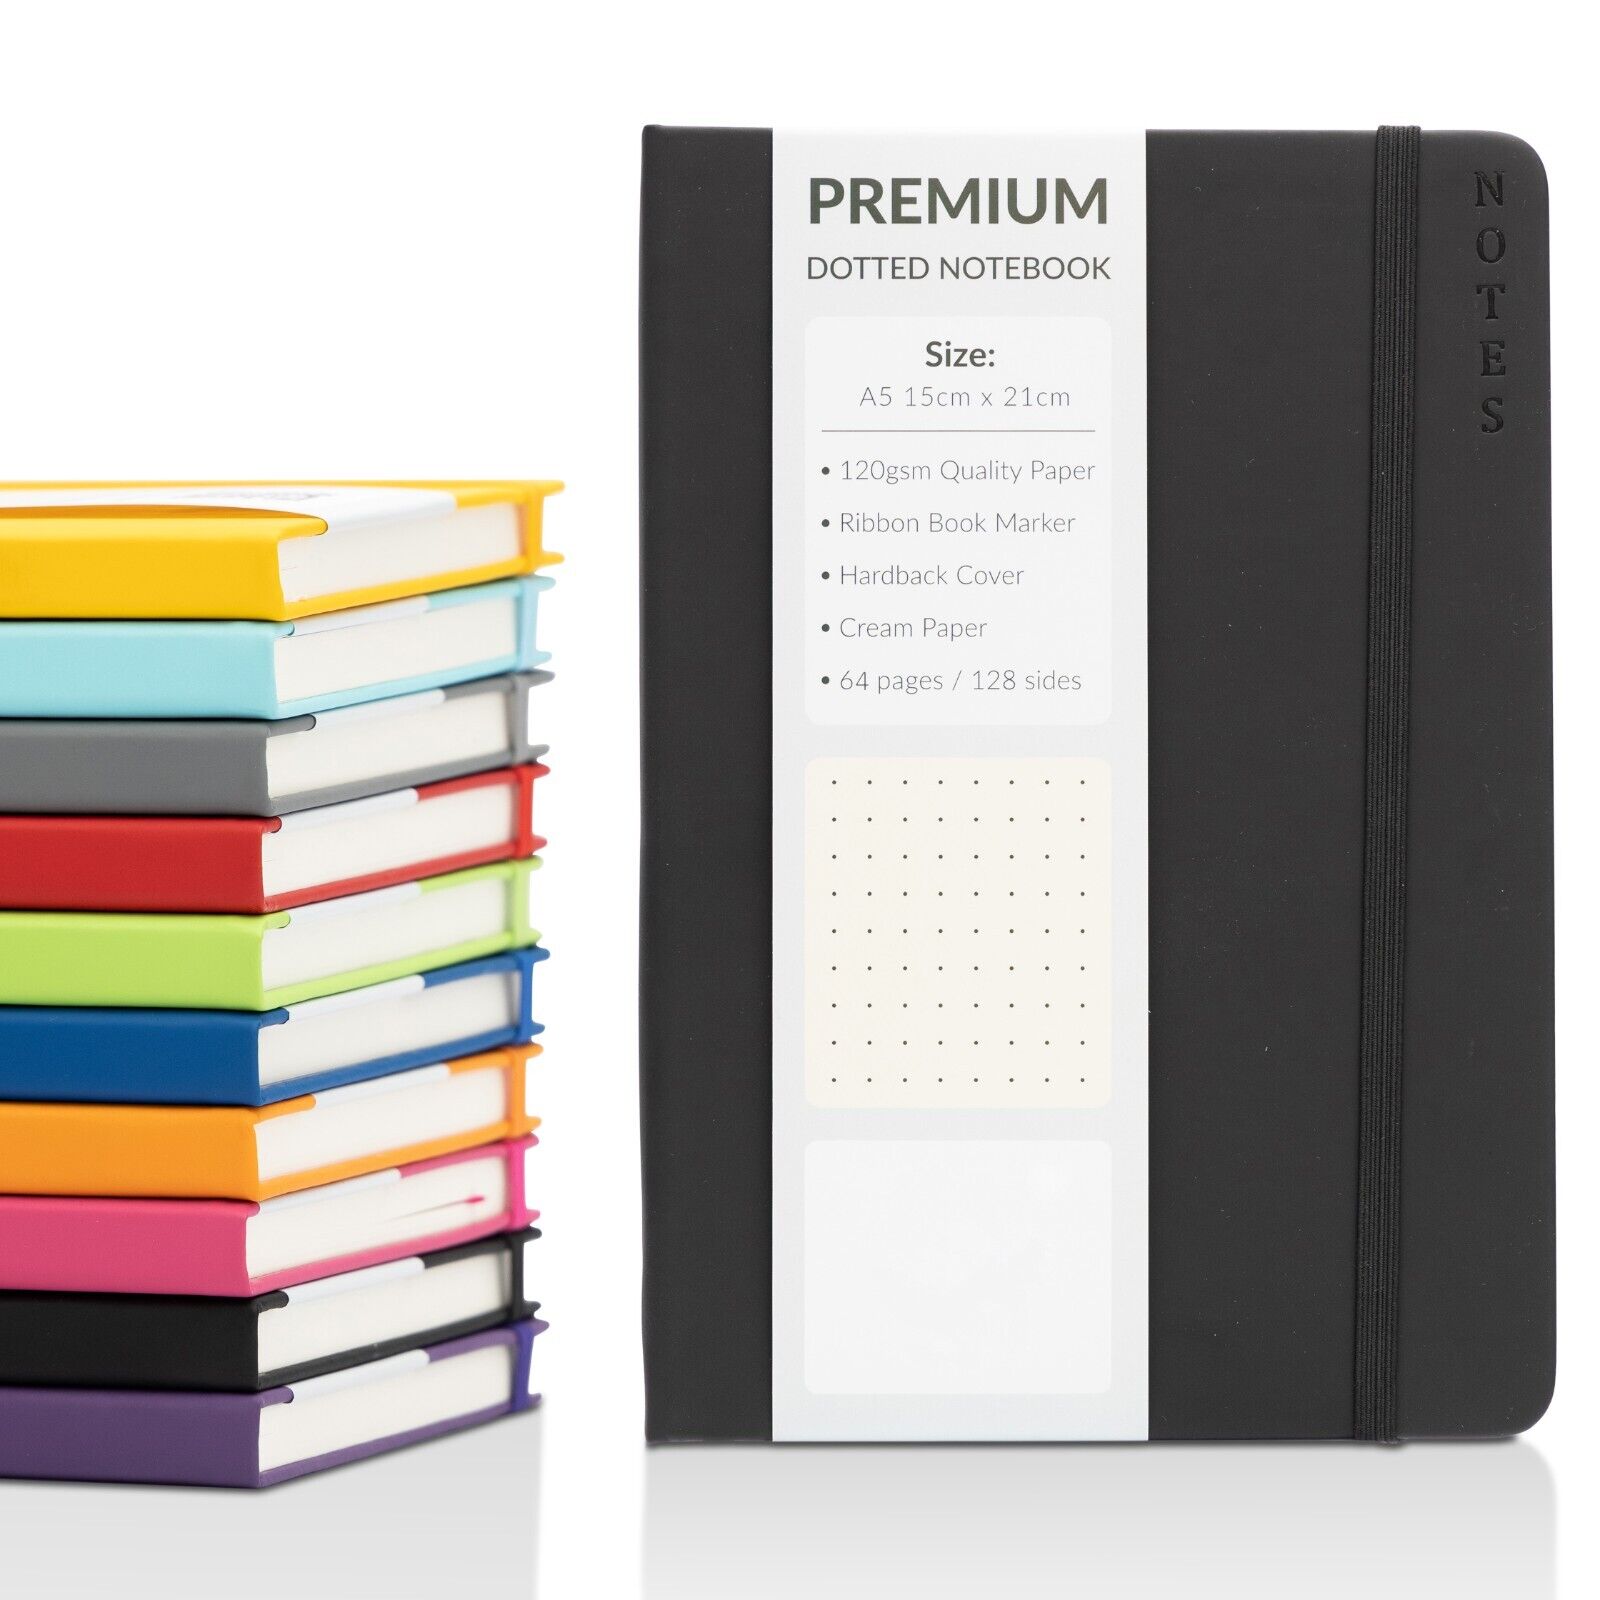 Premium Notebooks